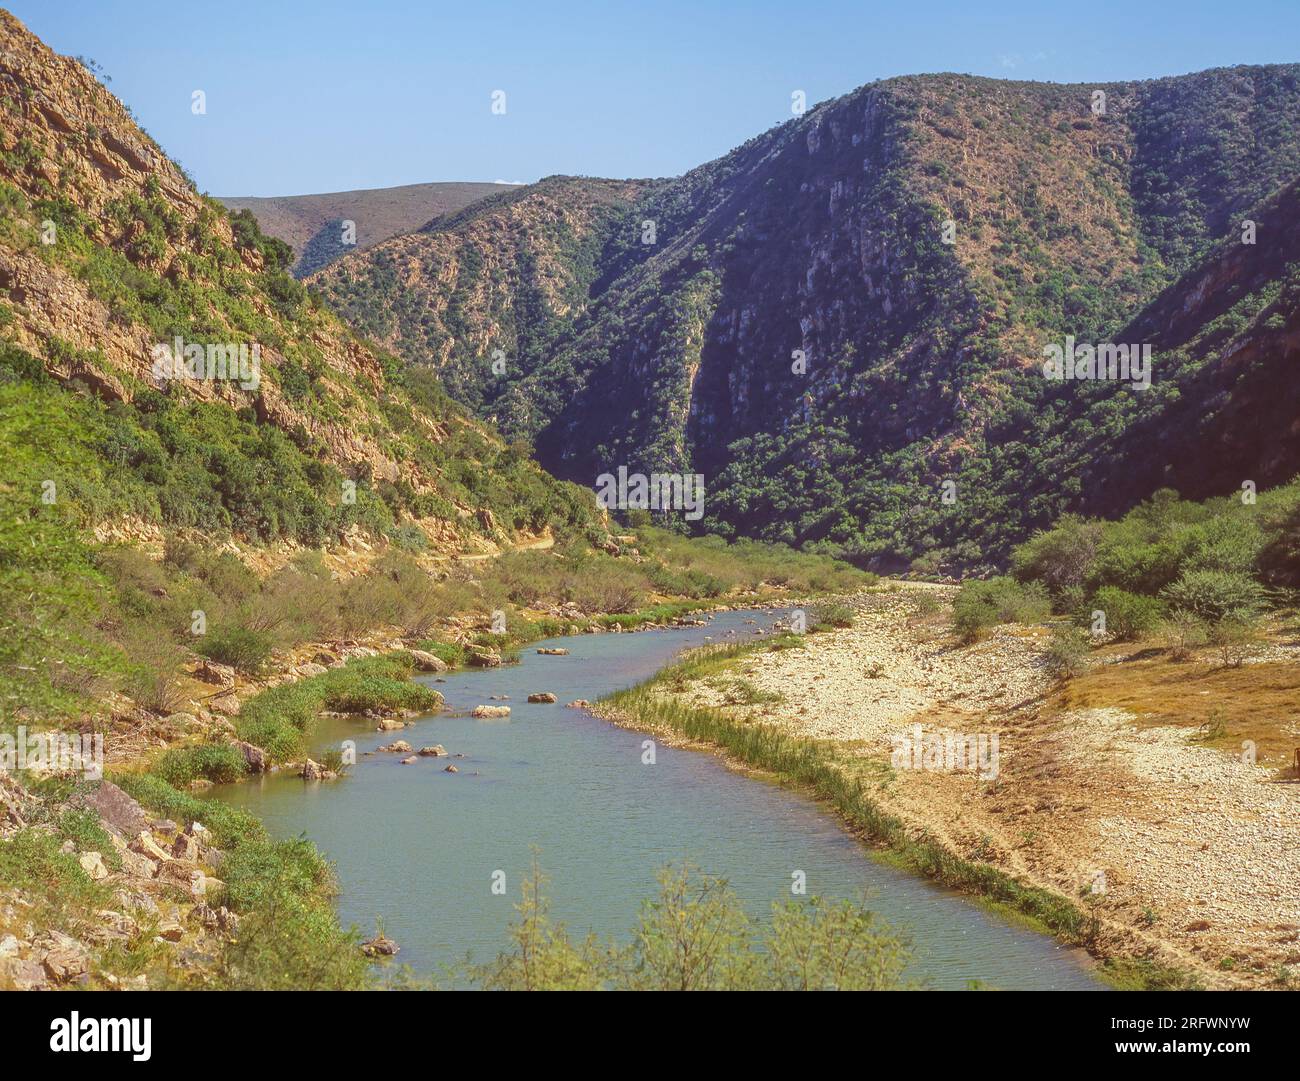 La rivière Groot marque l'extrémité orientale de la région de Baviaanskloof (Vallée des babouins) dans la province du Cap oriental en Afrique du Sud. Banque D'Images